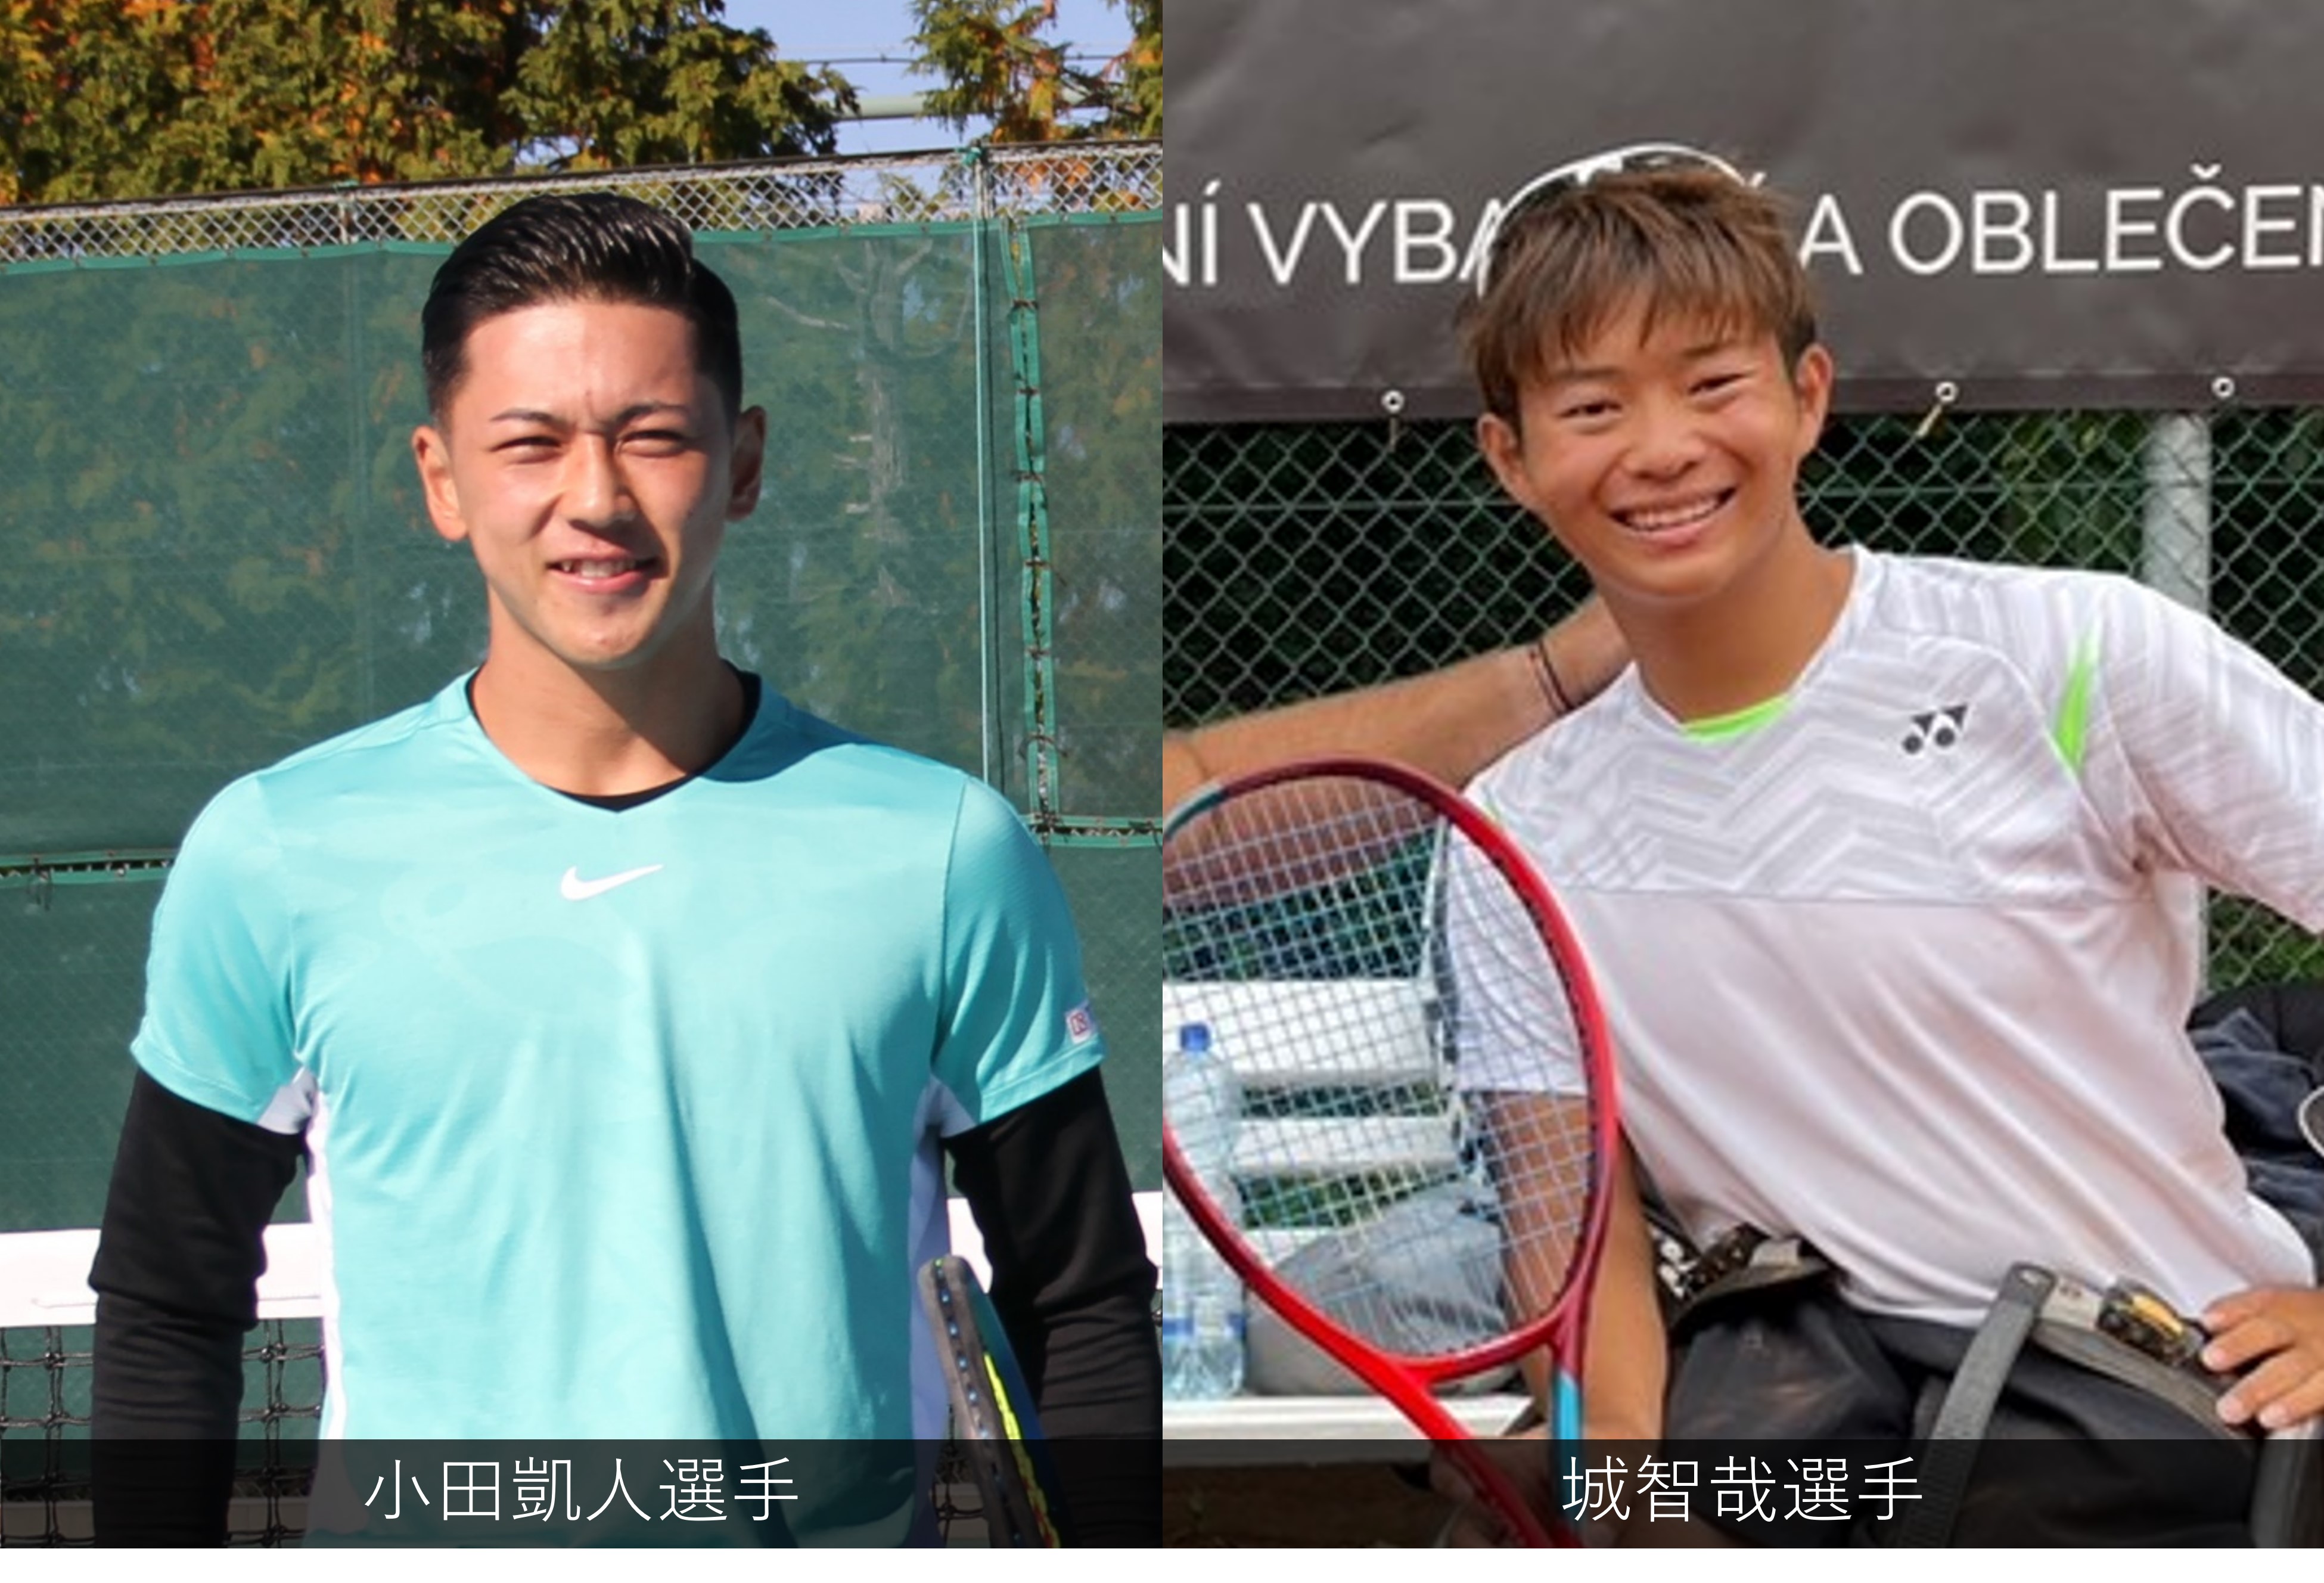 左は小田凱人選手、右は城智哉選手の写真です。